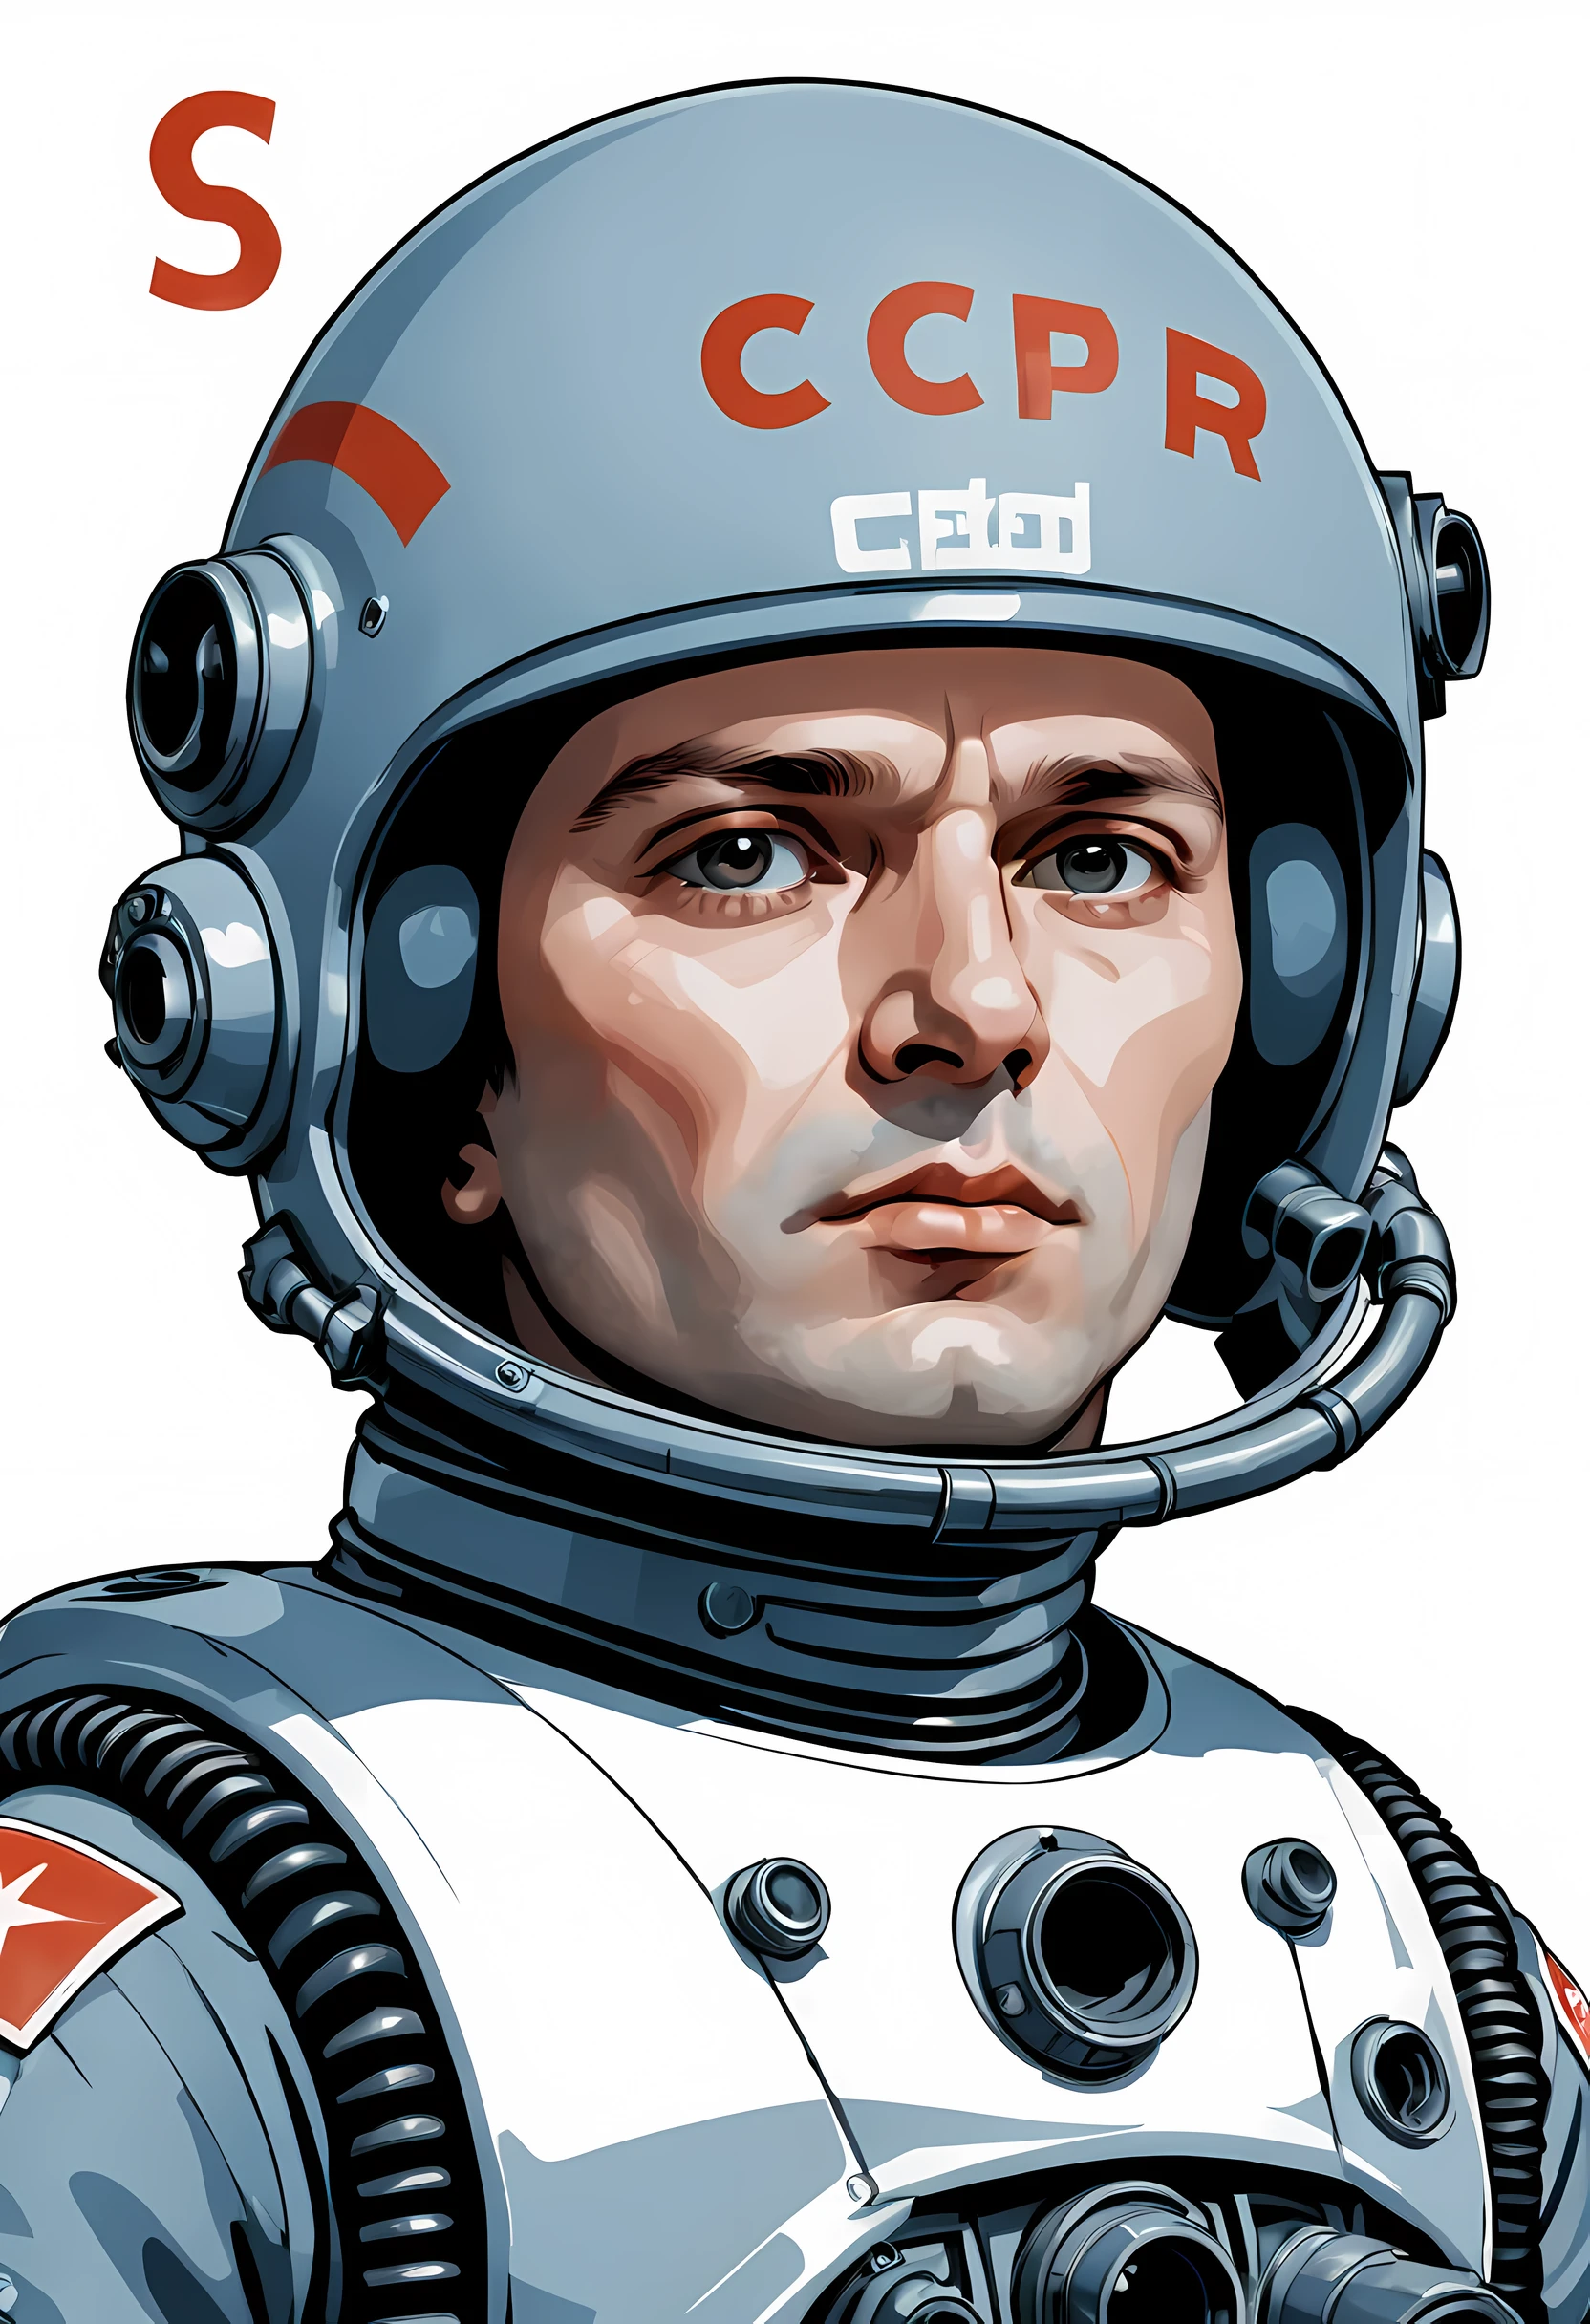 头像, космонавт 苏联 в шлеме Гигера, 字母 "苏联" 在头盔上, 35 岁男人严肃的面孔, 从眉毛下面看, 手上拿着一把神奇的爆能枪, 爆能枪管升起